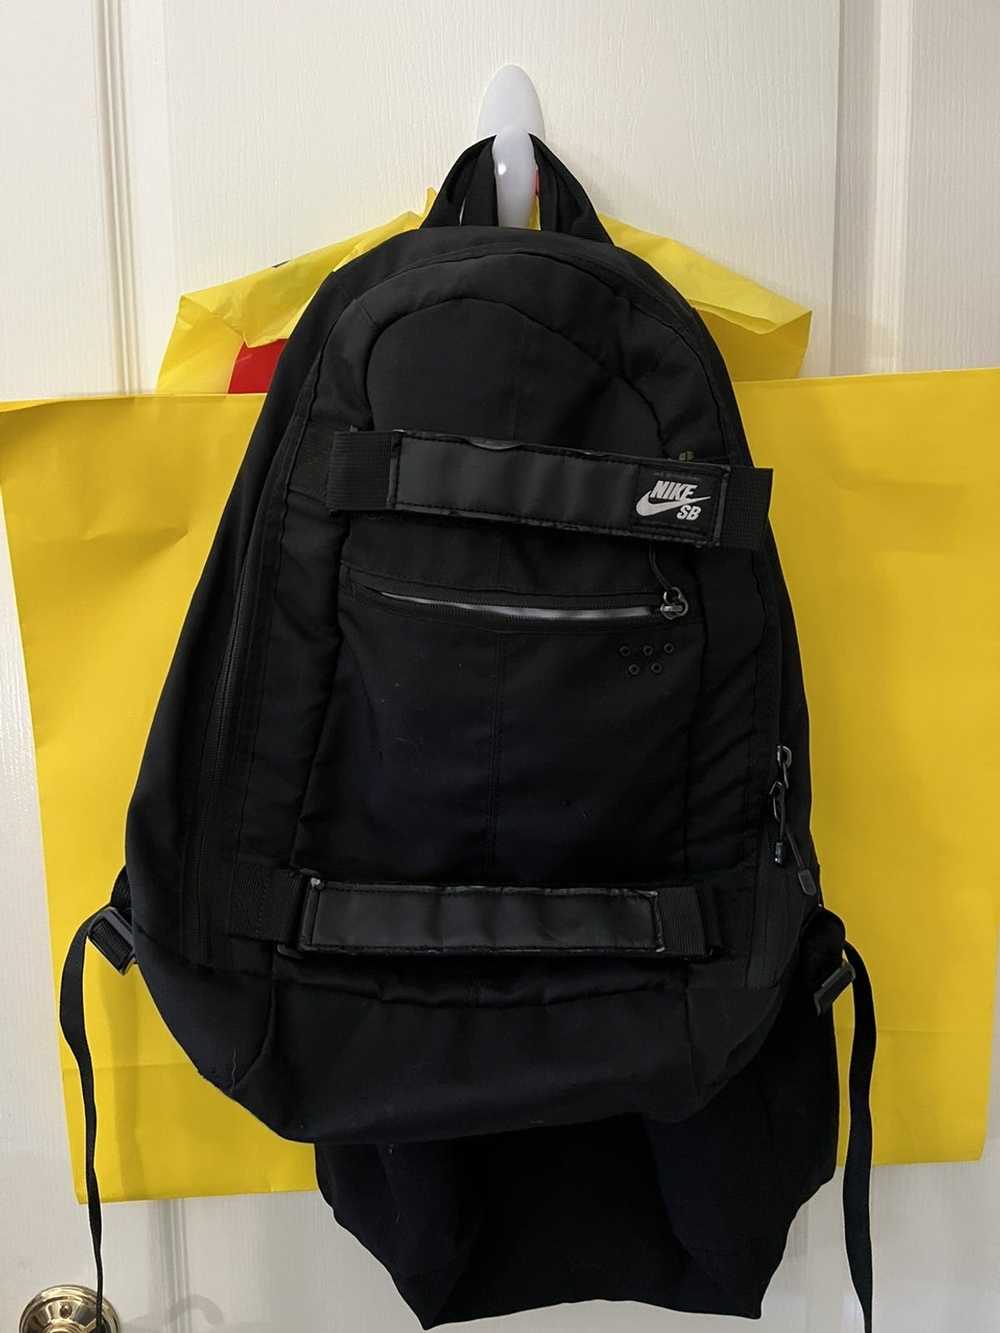 Nike Nike SB backpack - image 1